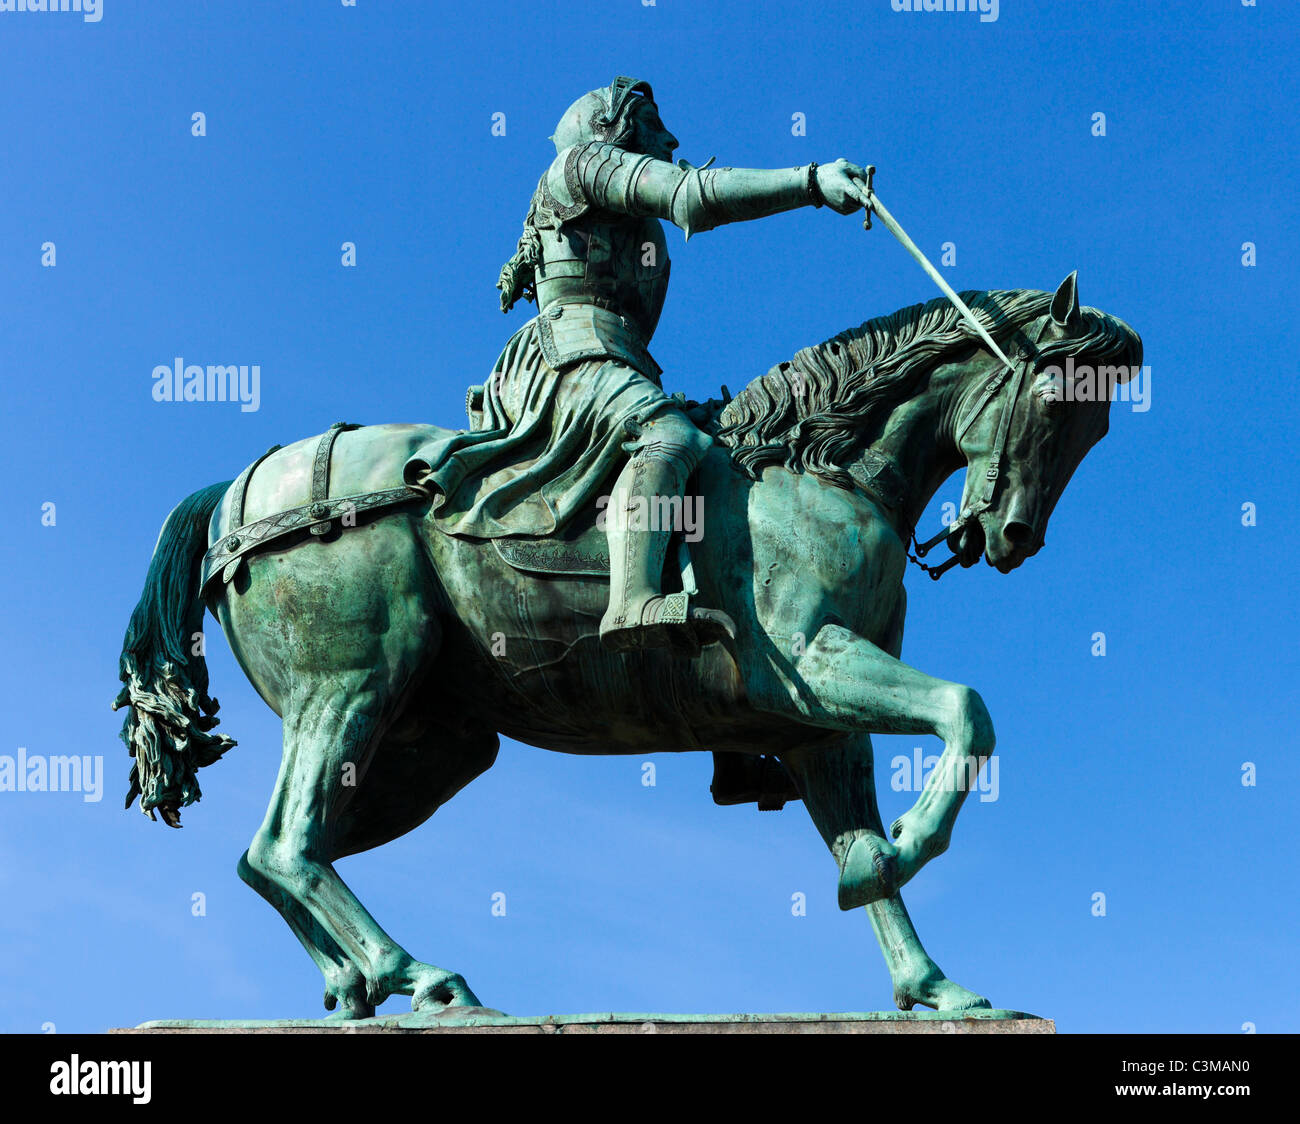 Statua di Giovanna d'arco nel centro della città, Place du Martroi, Orleans, Francia Foto Stock